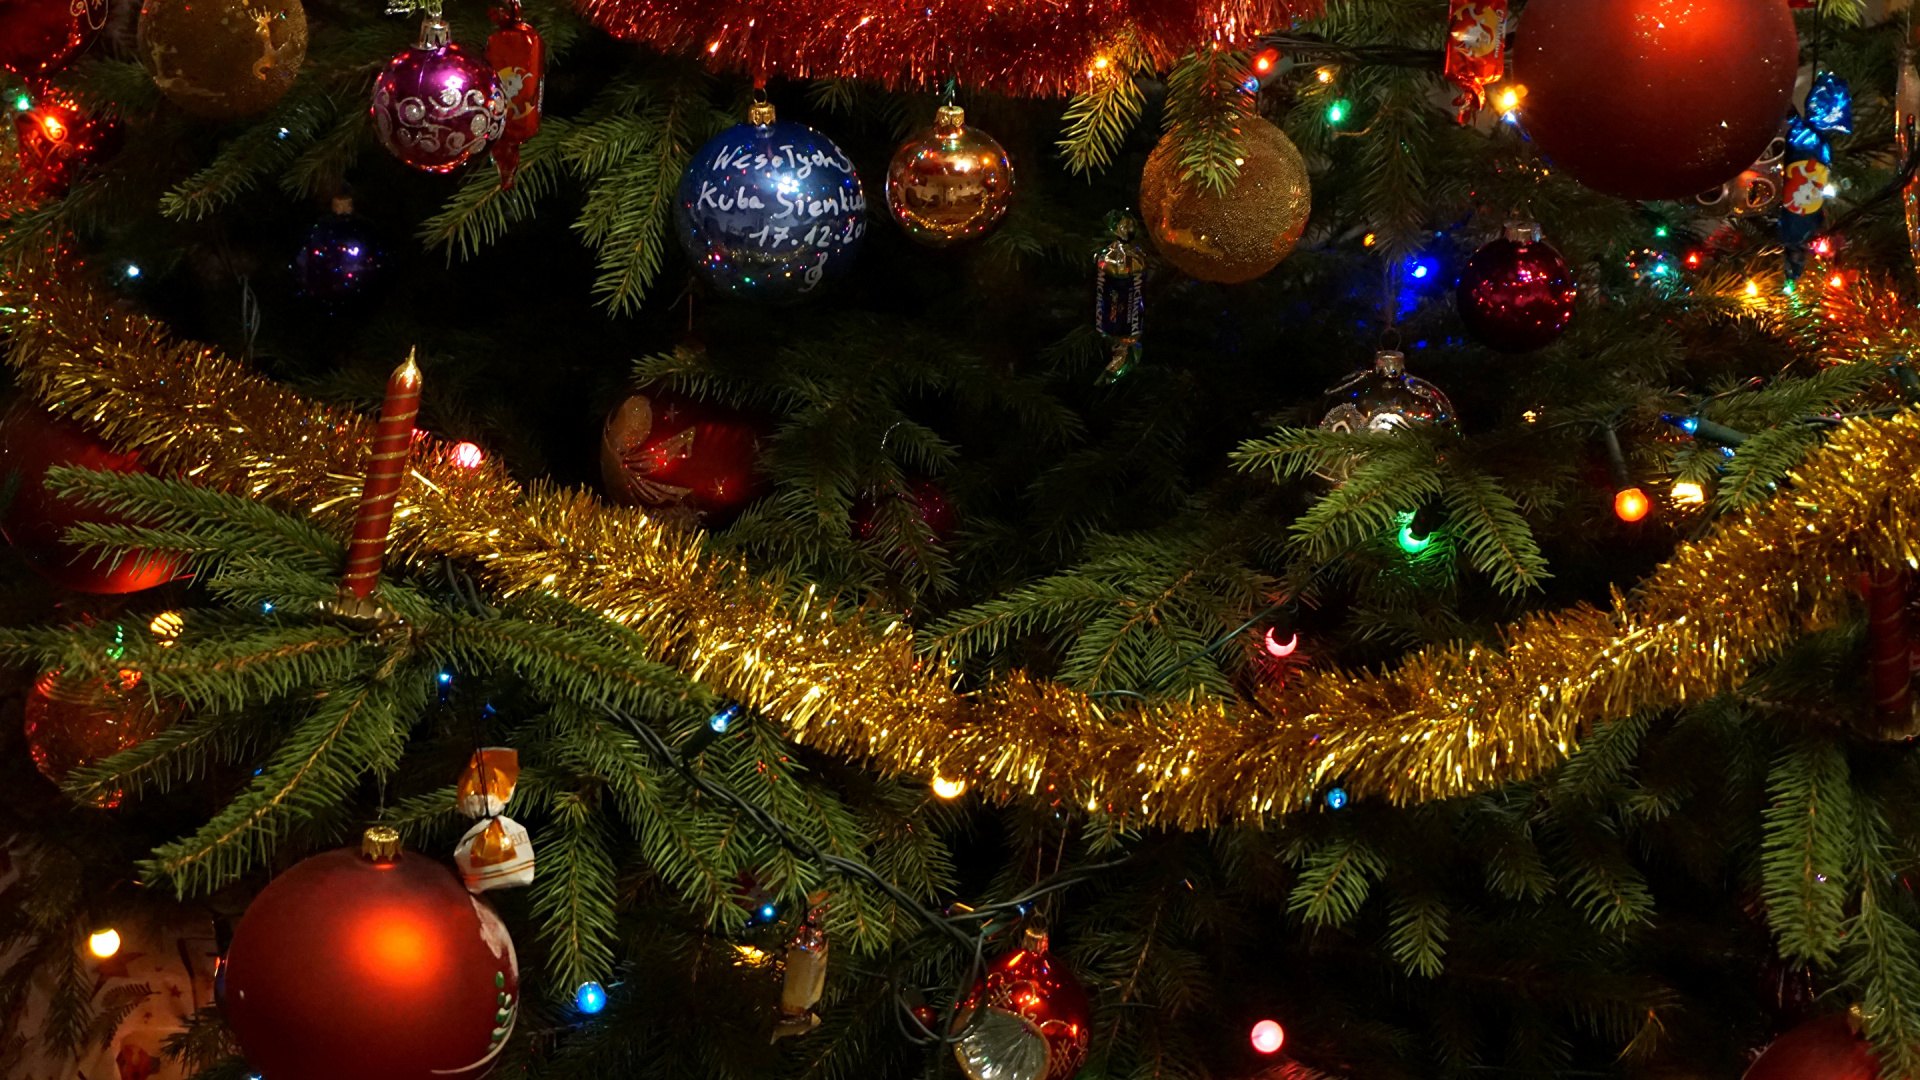 El Día De Navidad, Luces de Navidad, Decoración de la Navidad, Árbol de Navidad Artificial, Adorno de Navidad. Wallpaper in 1920x1080 Resolution